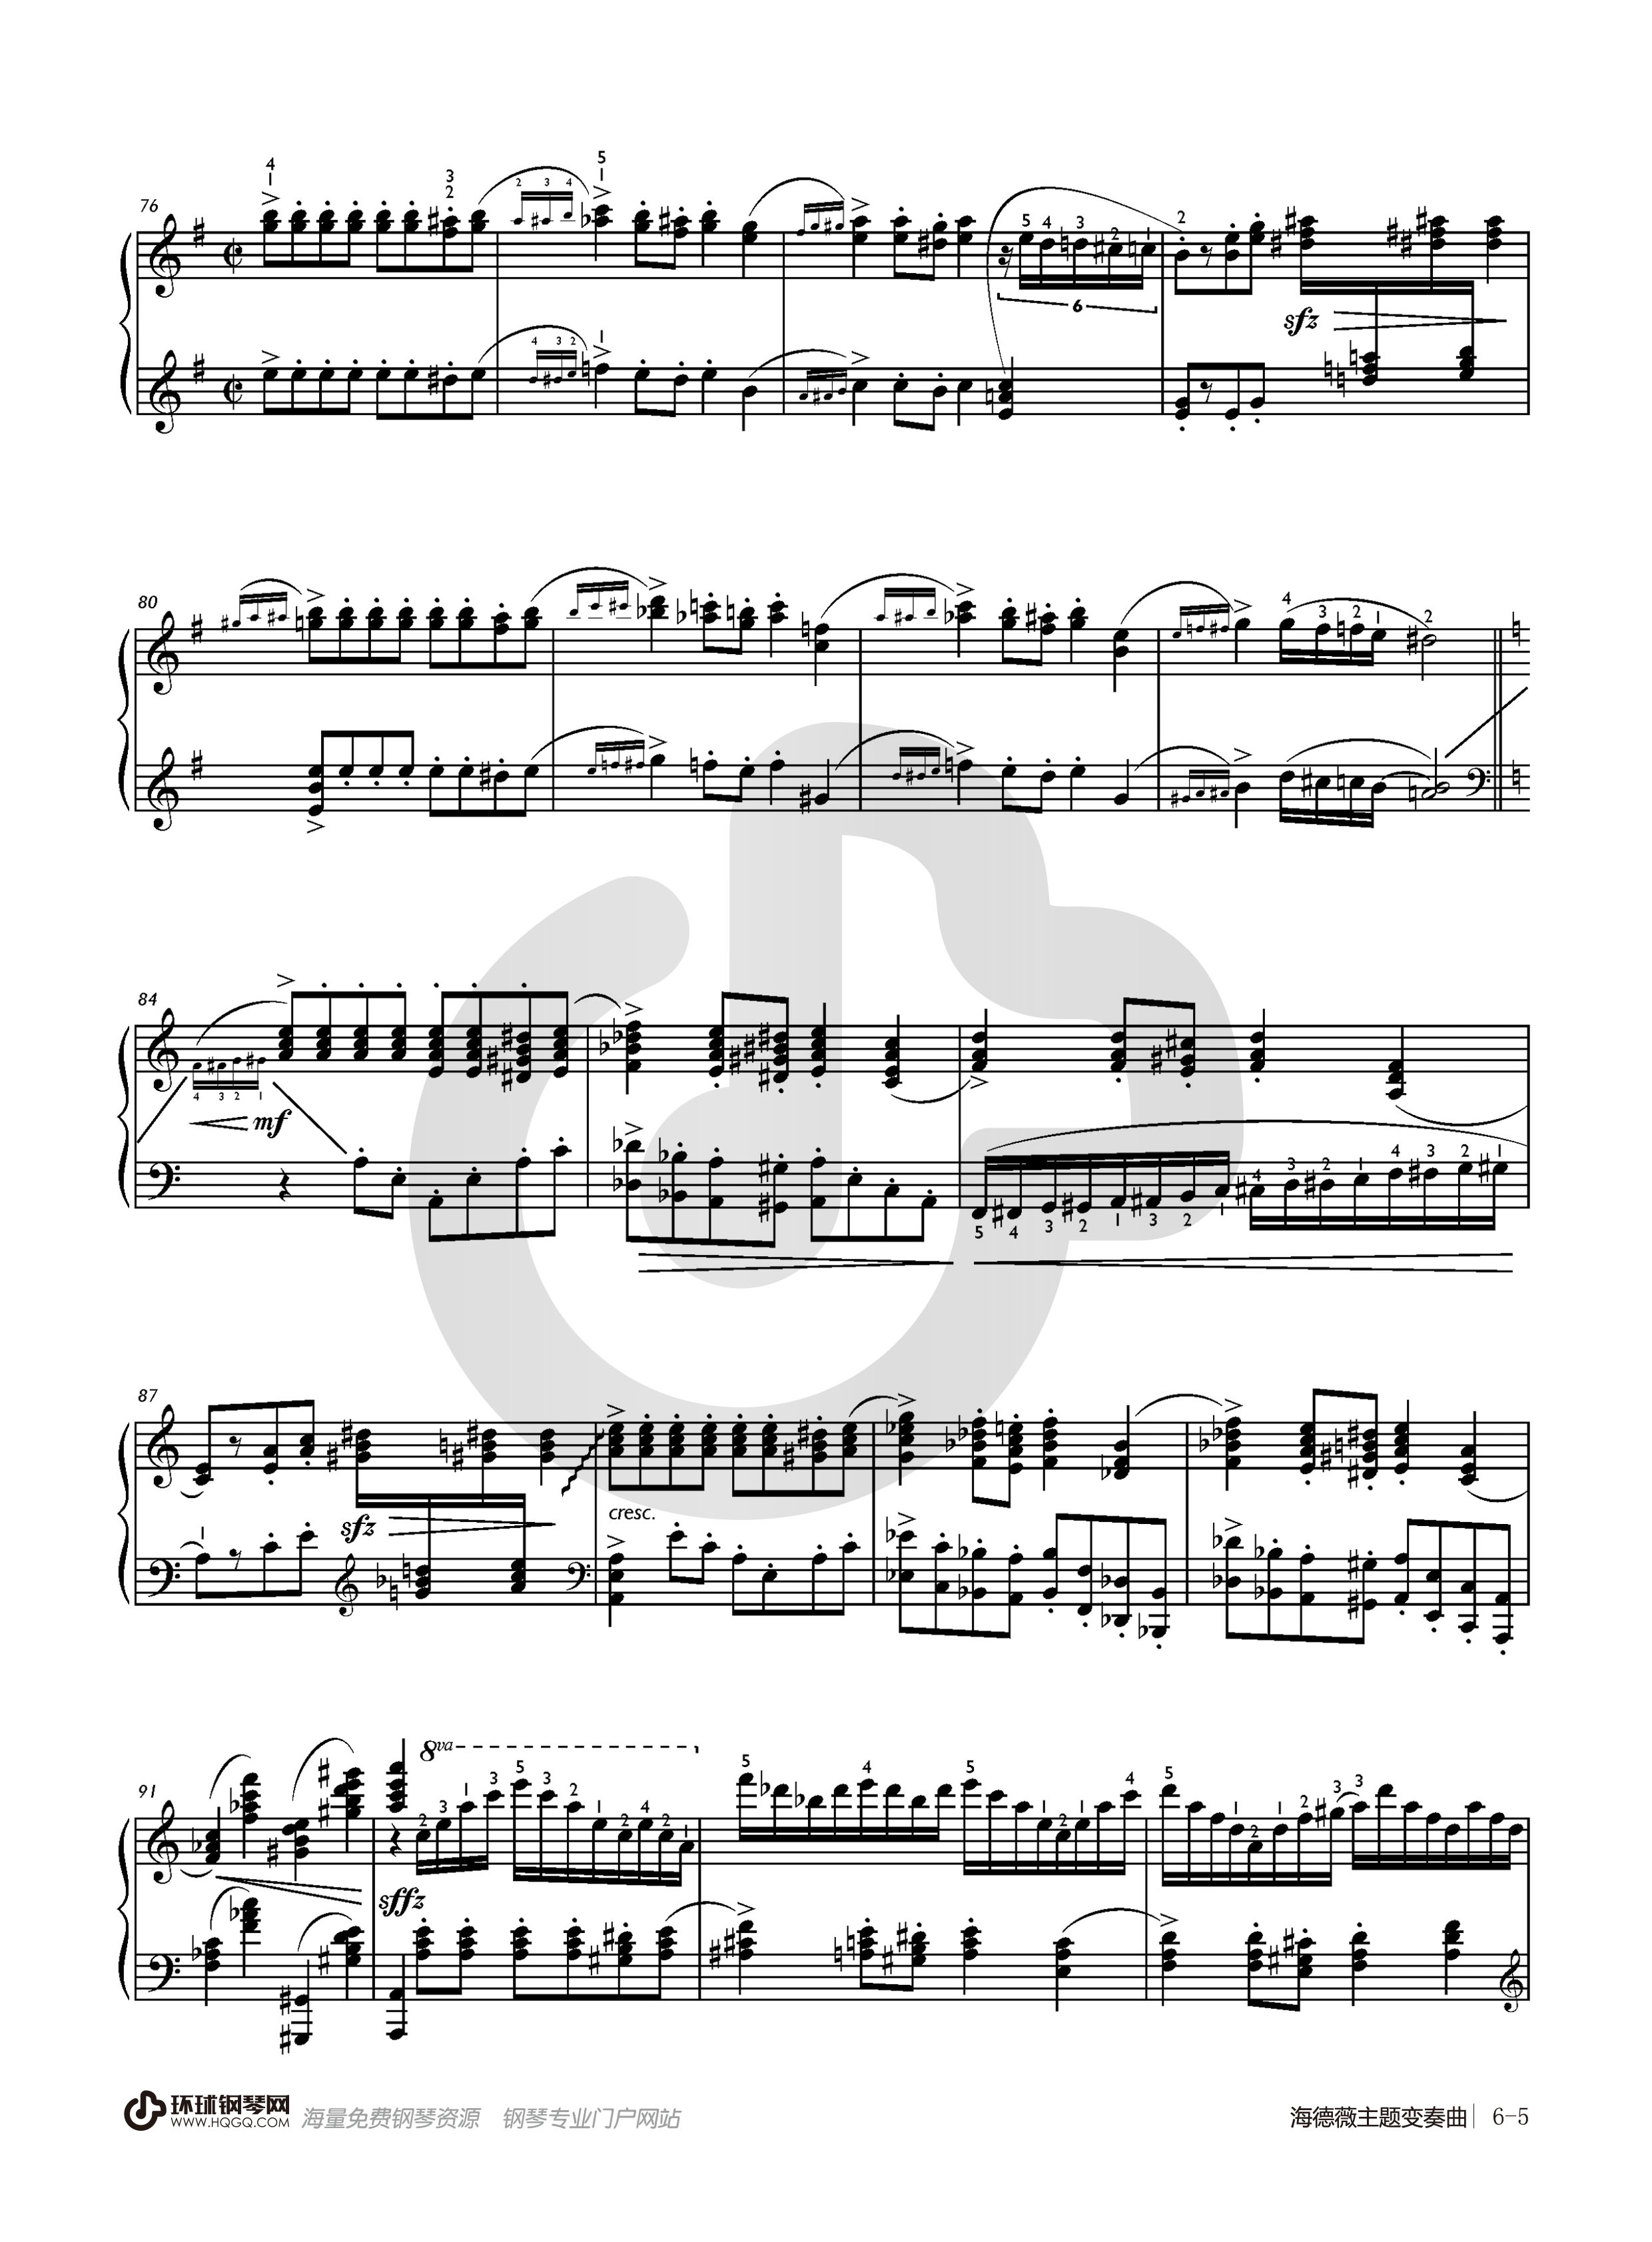 哈利波特的钢琴曲谱子图片